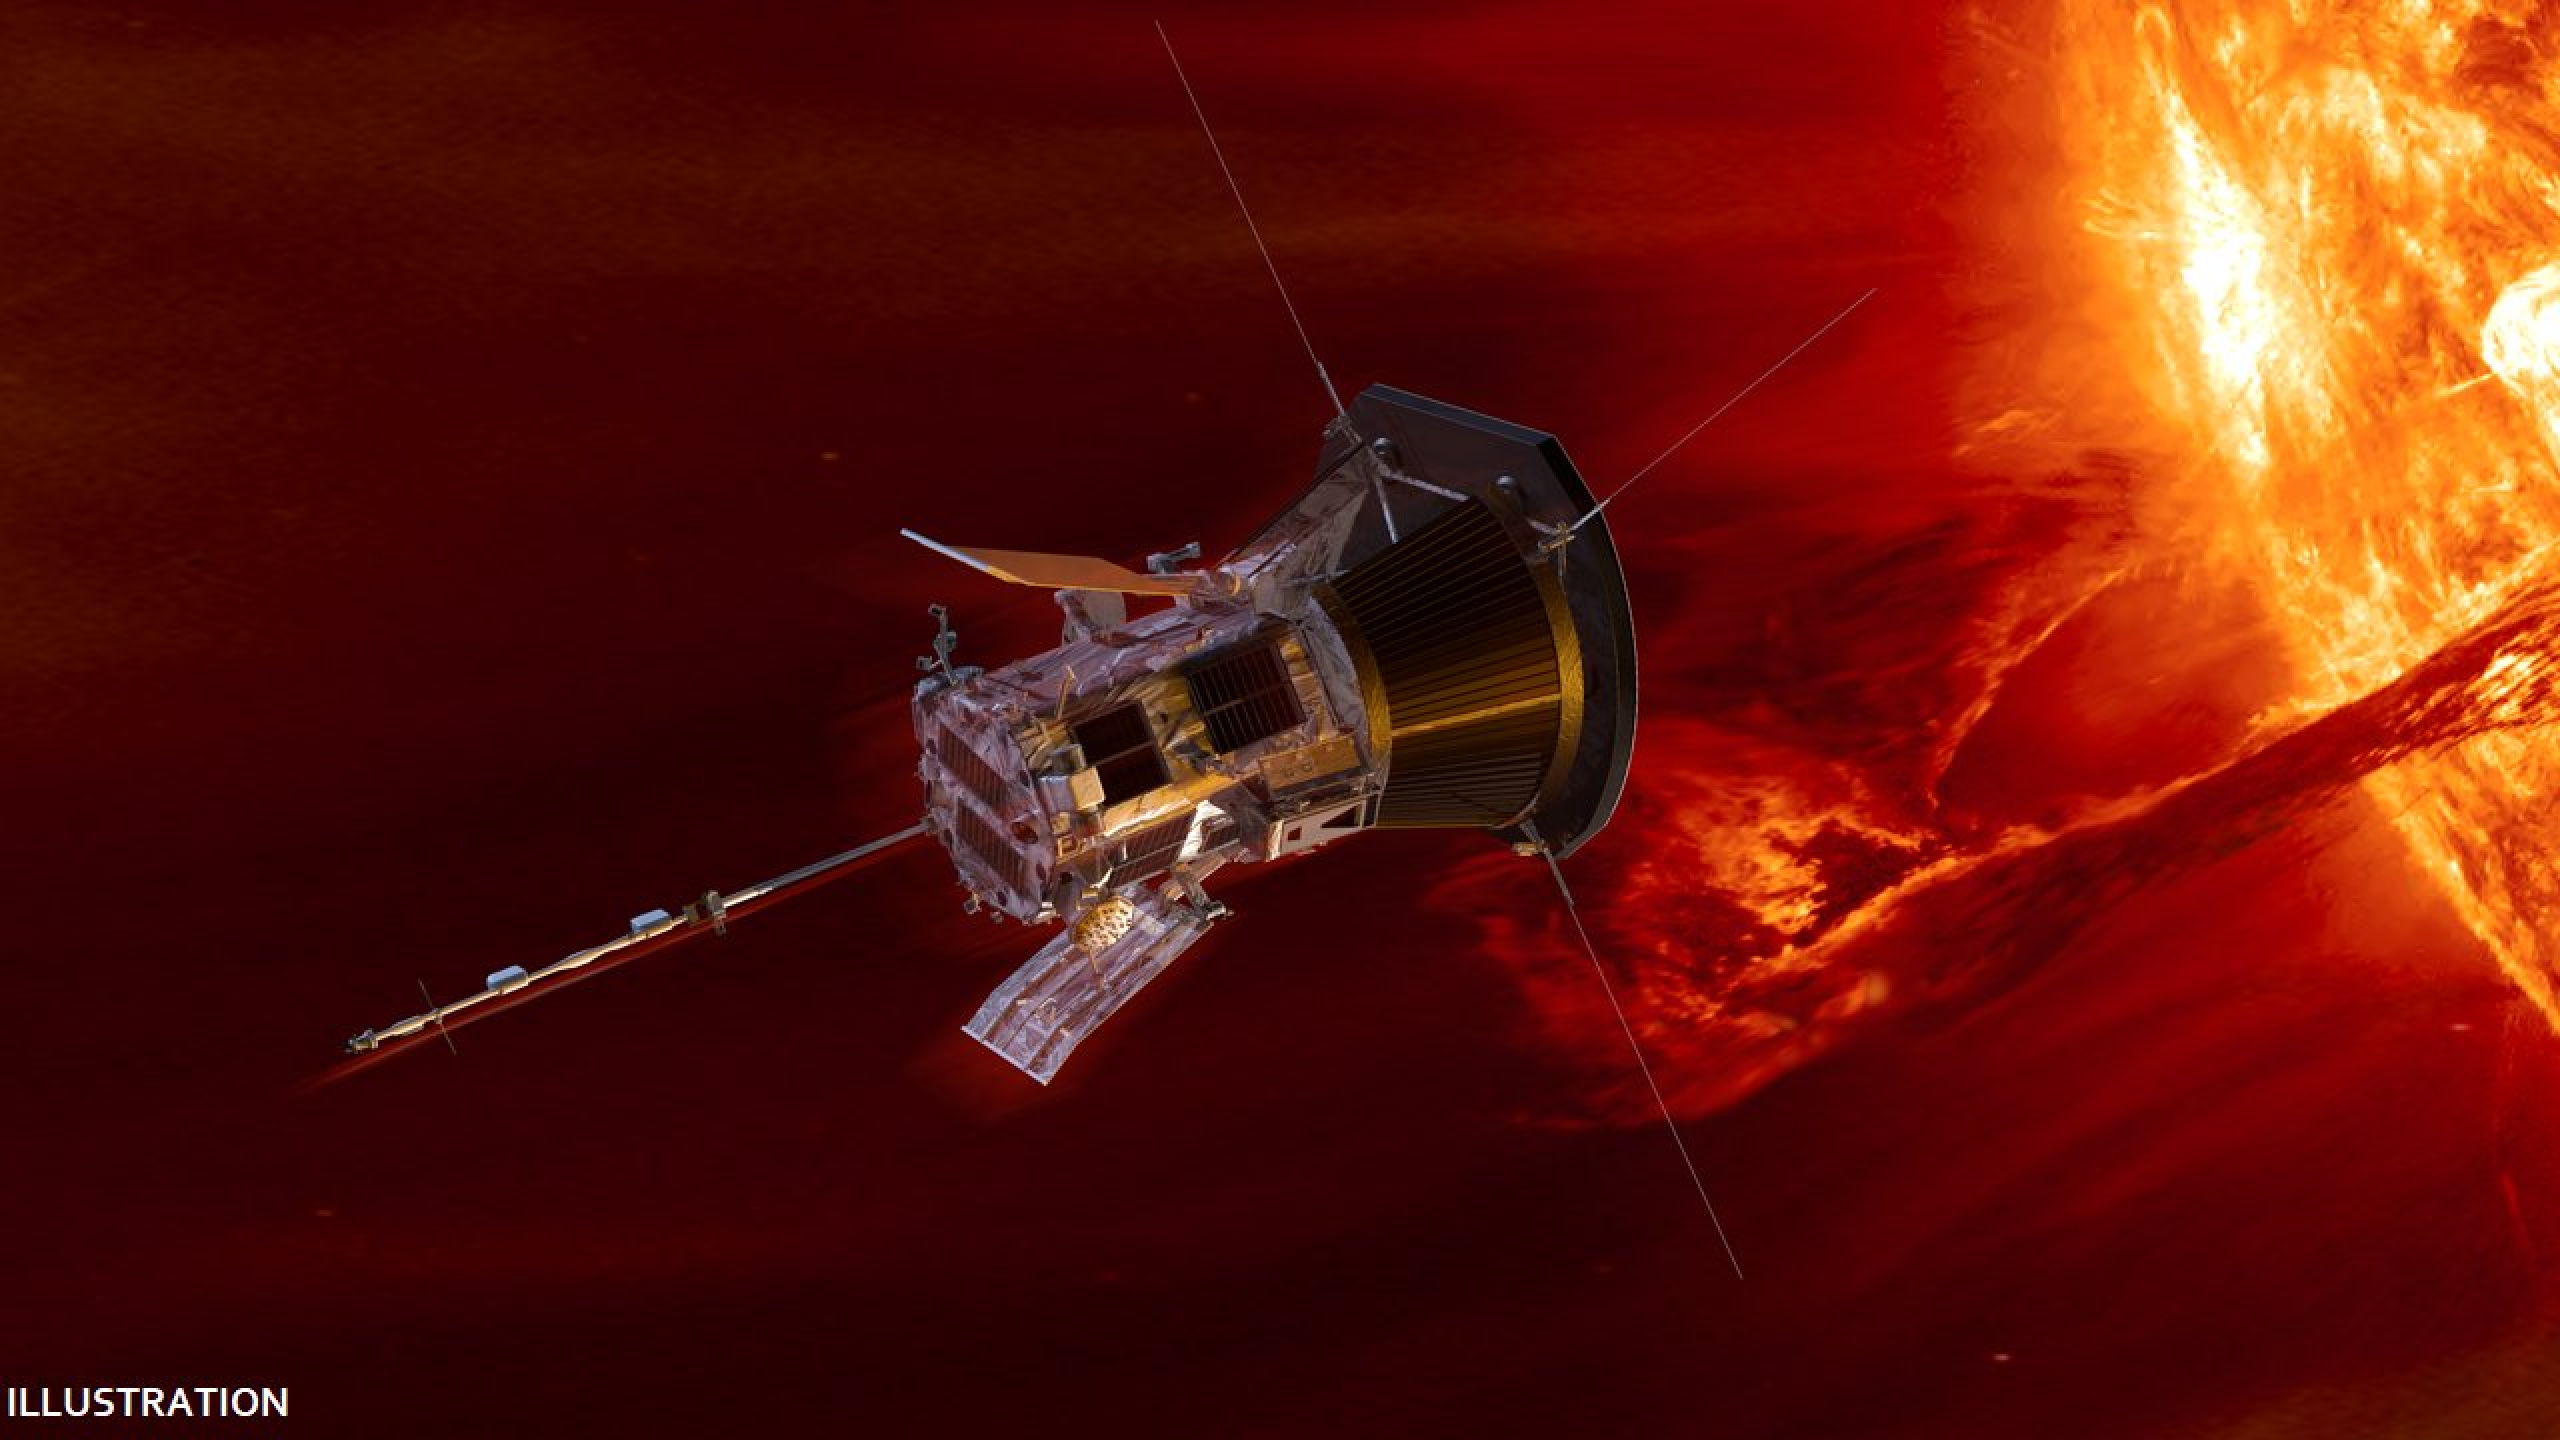 NASA touches the sun